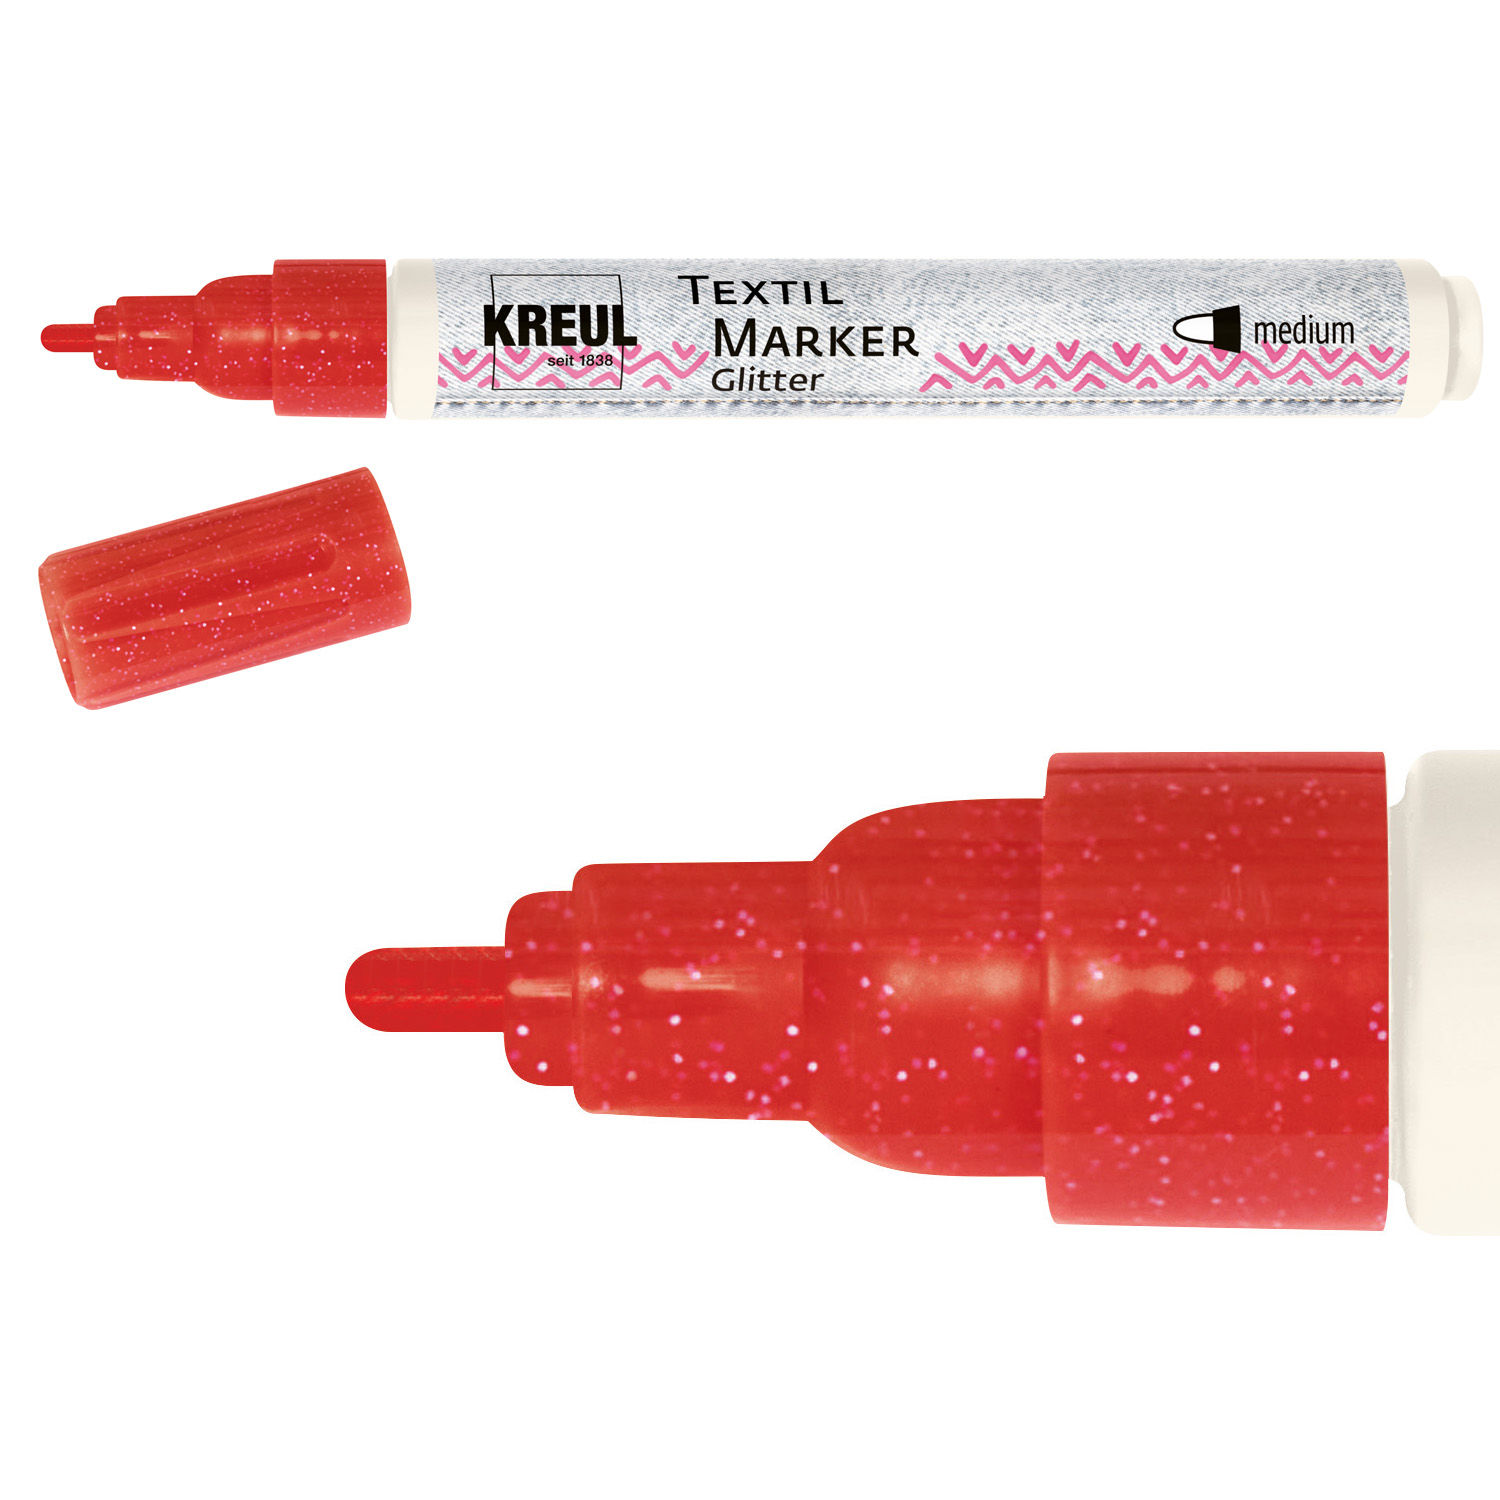 Kreul Textil Marker / Stoffmalstift, Glitter, Medium, 2-4 mm, Rot